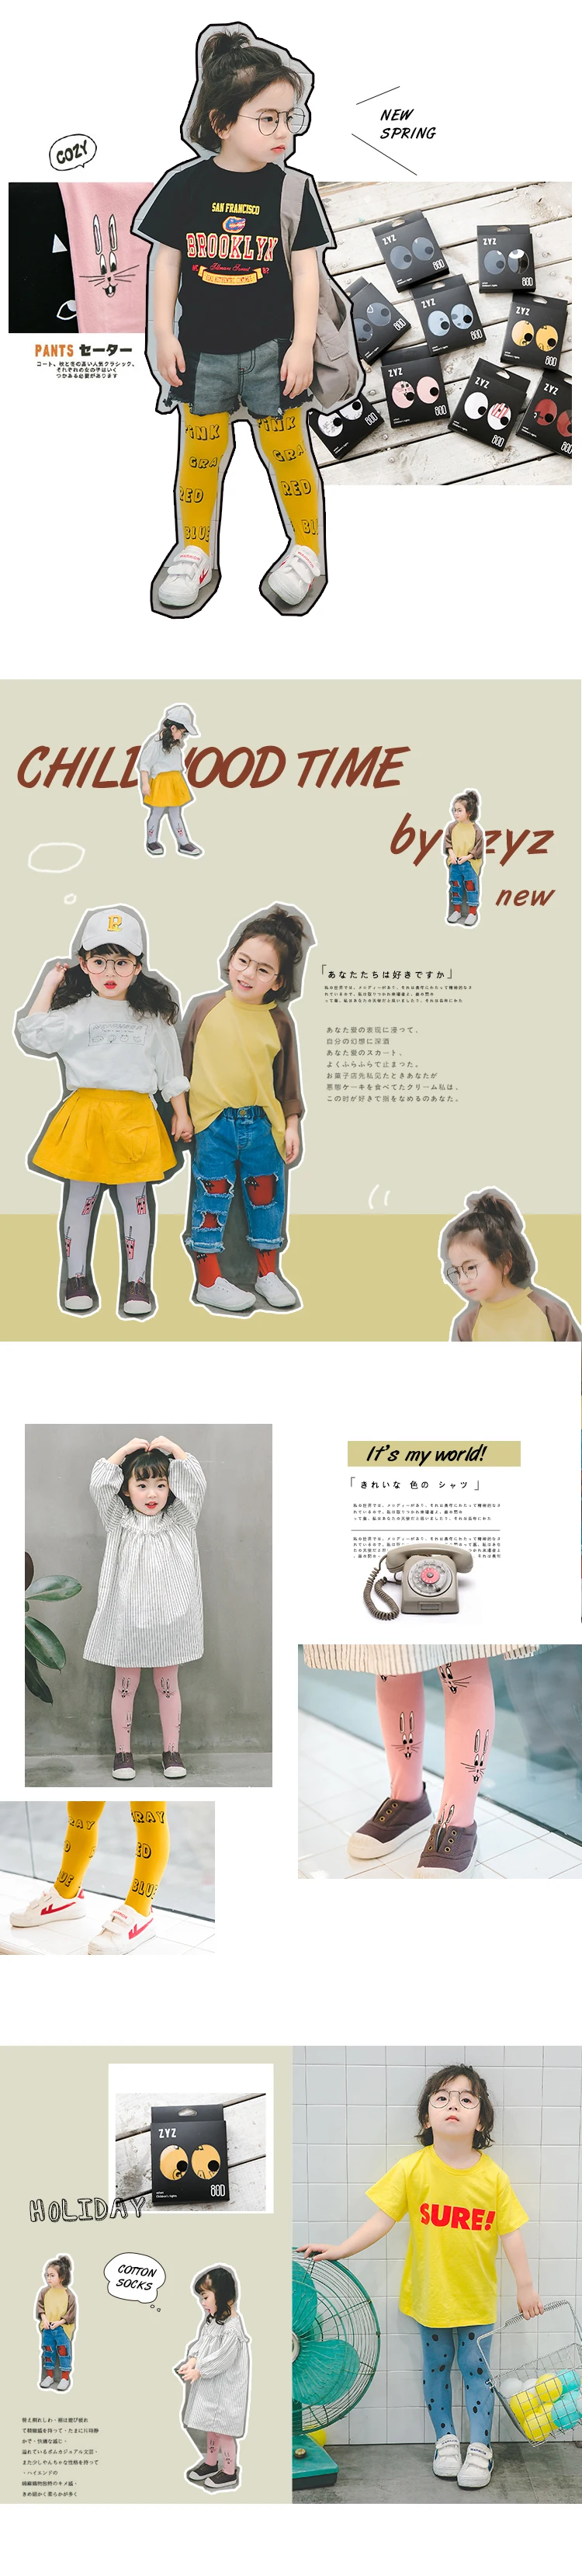 Колготки для малышей детские танцевальные колготки для девочек от 2 до 6 лет, Детские Балетные колготки с принтом 80D, Z037